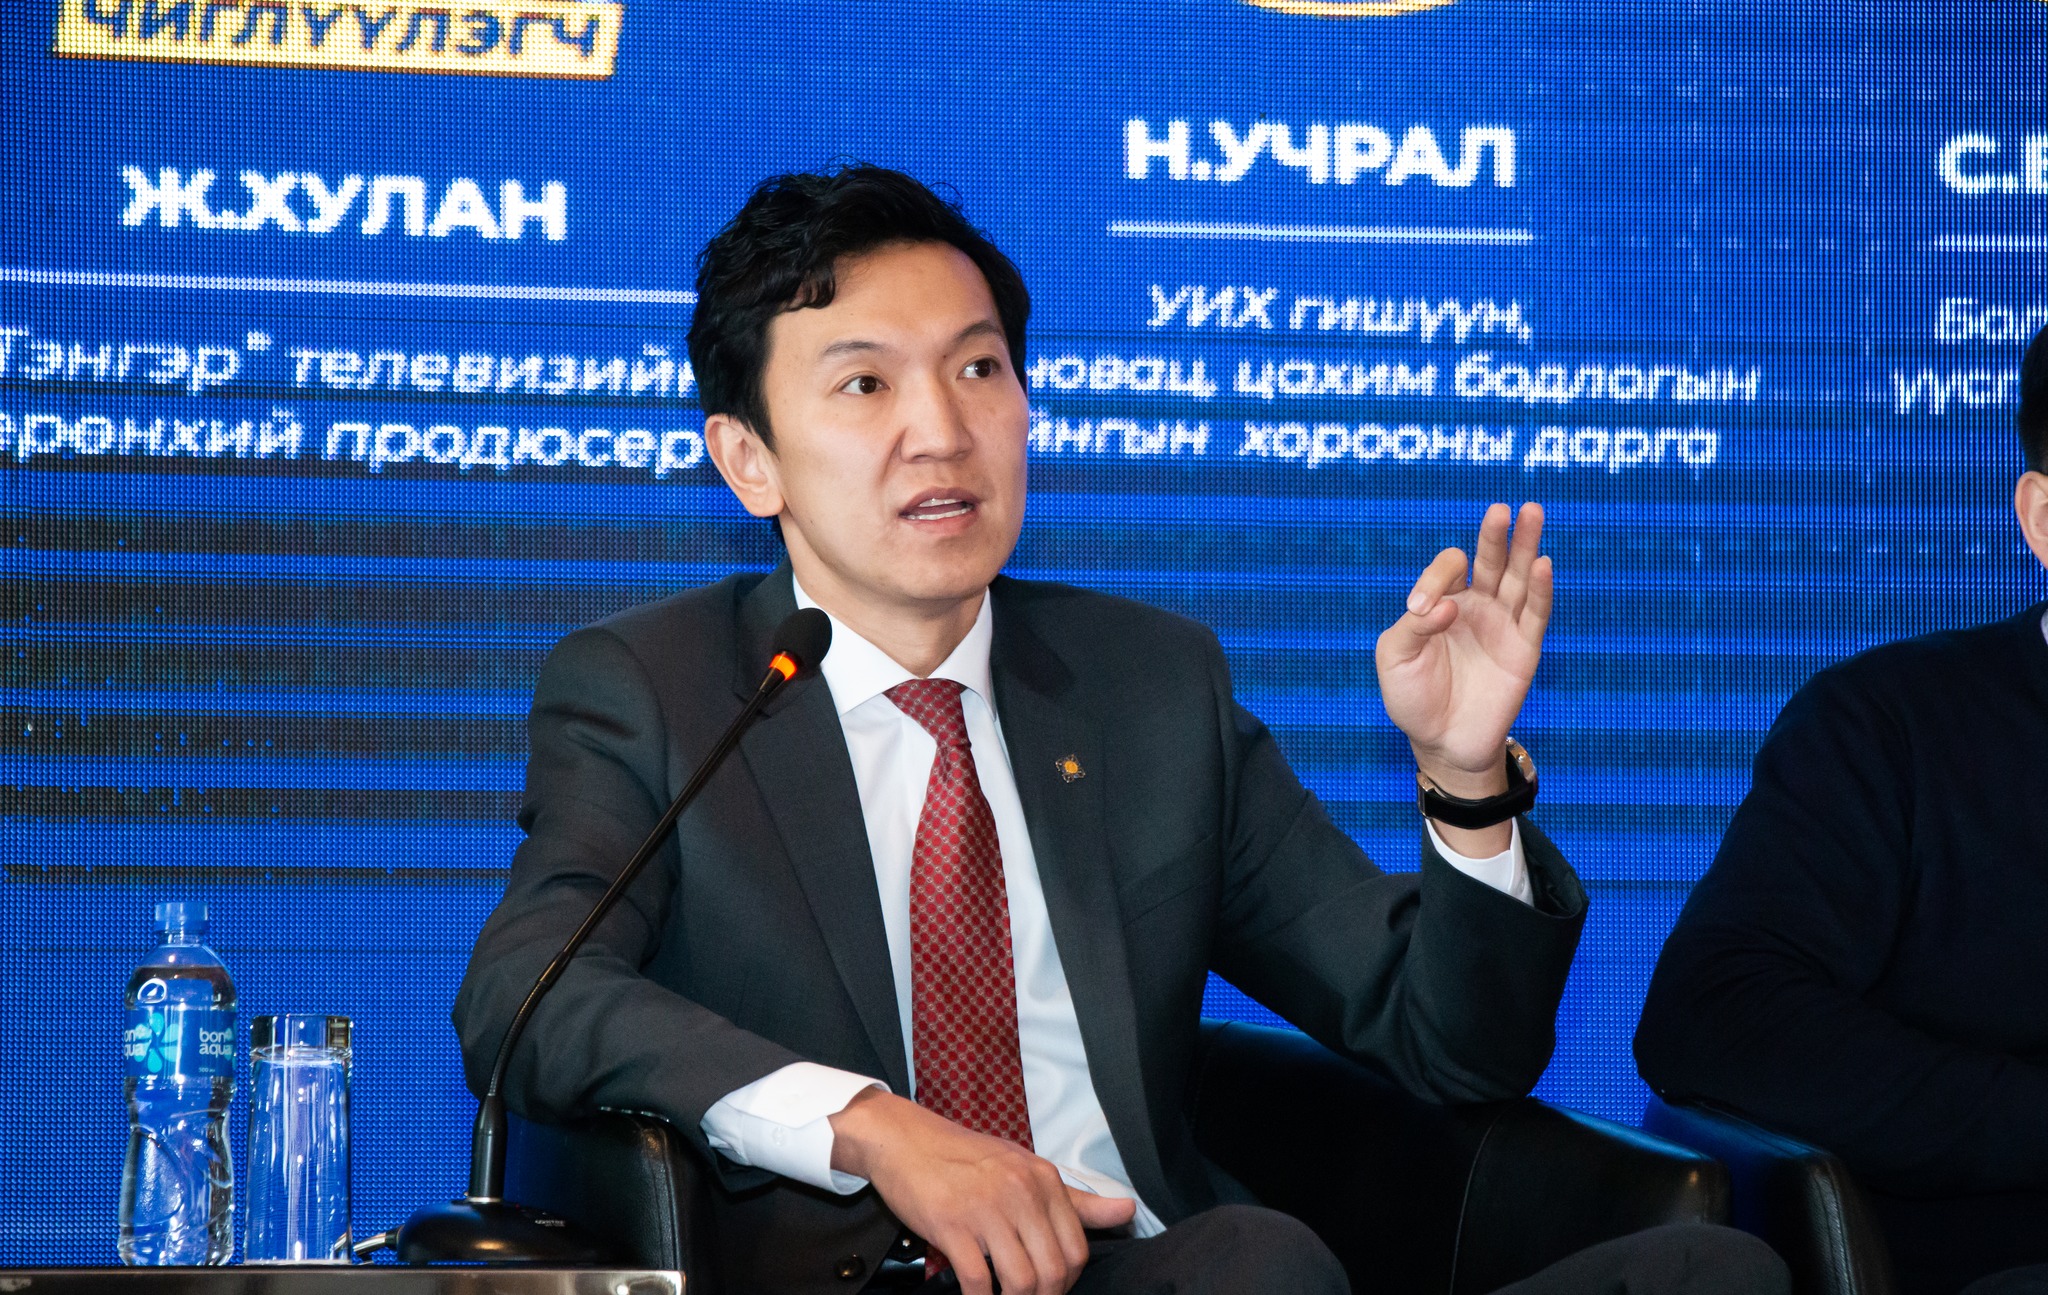 Н.Учрал: Дижитал эдийн засаг бол Монгол Улсын эдийн засгийг солонгоруулах маш том боломж